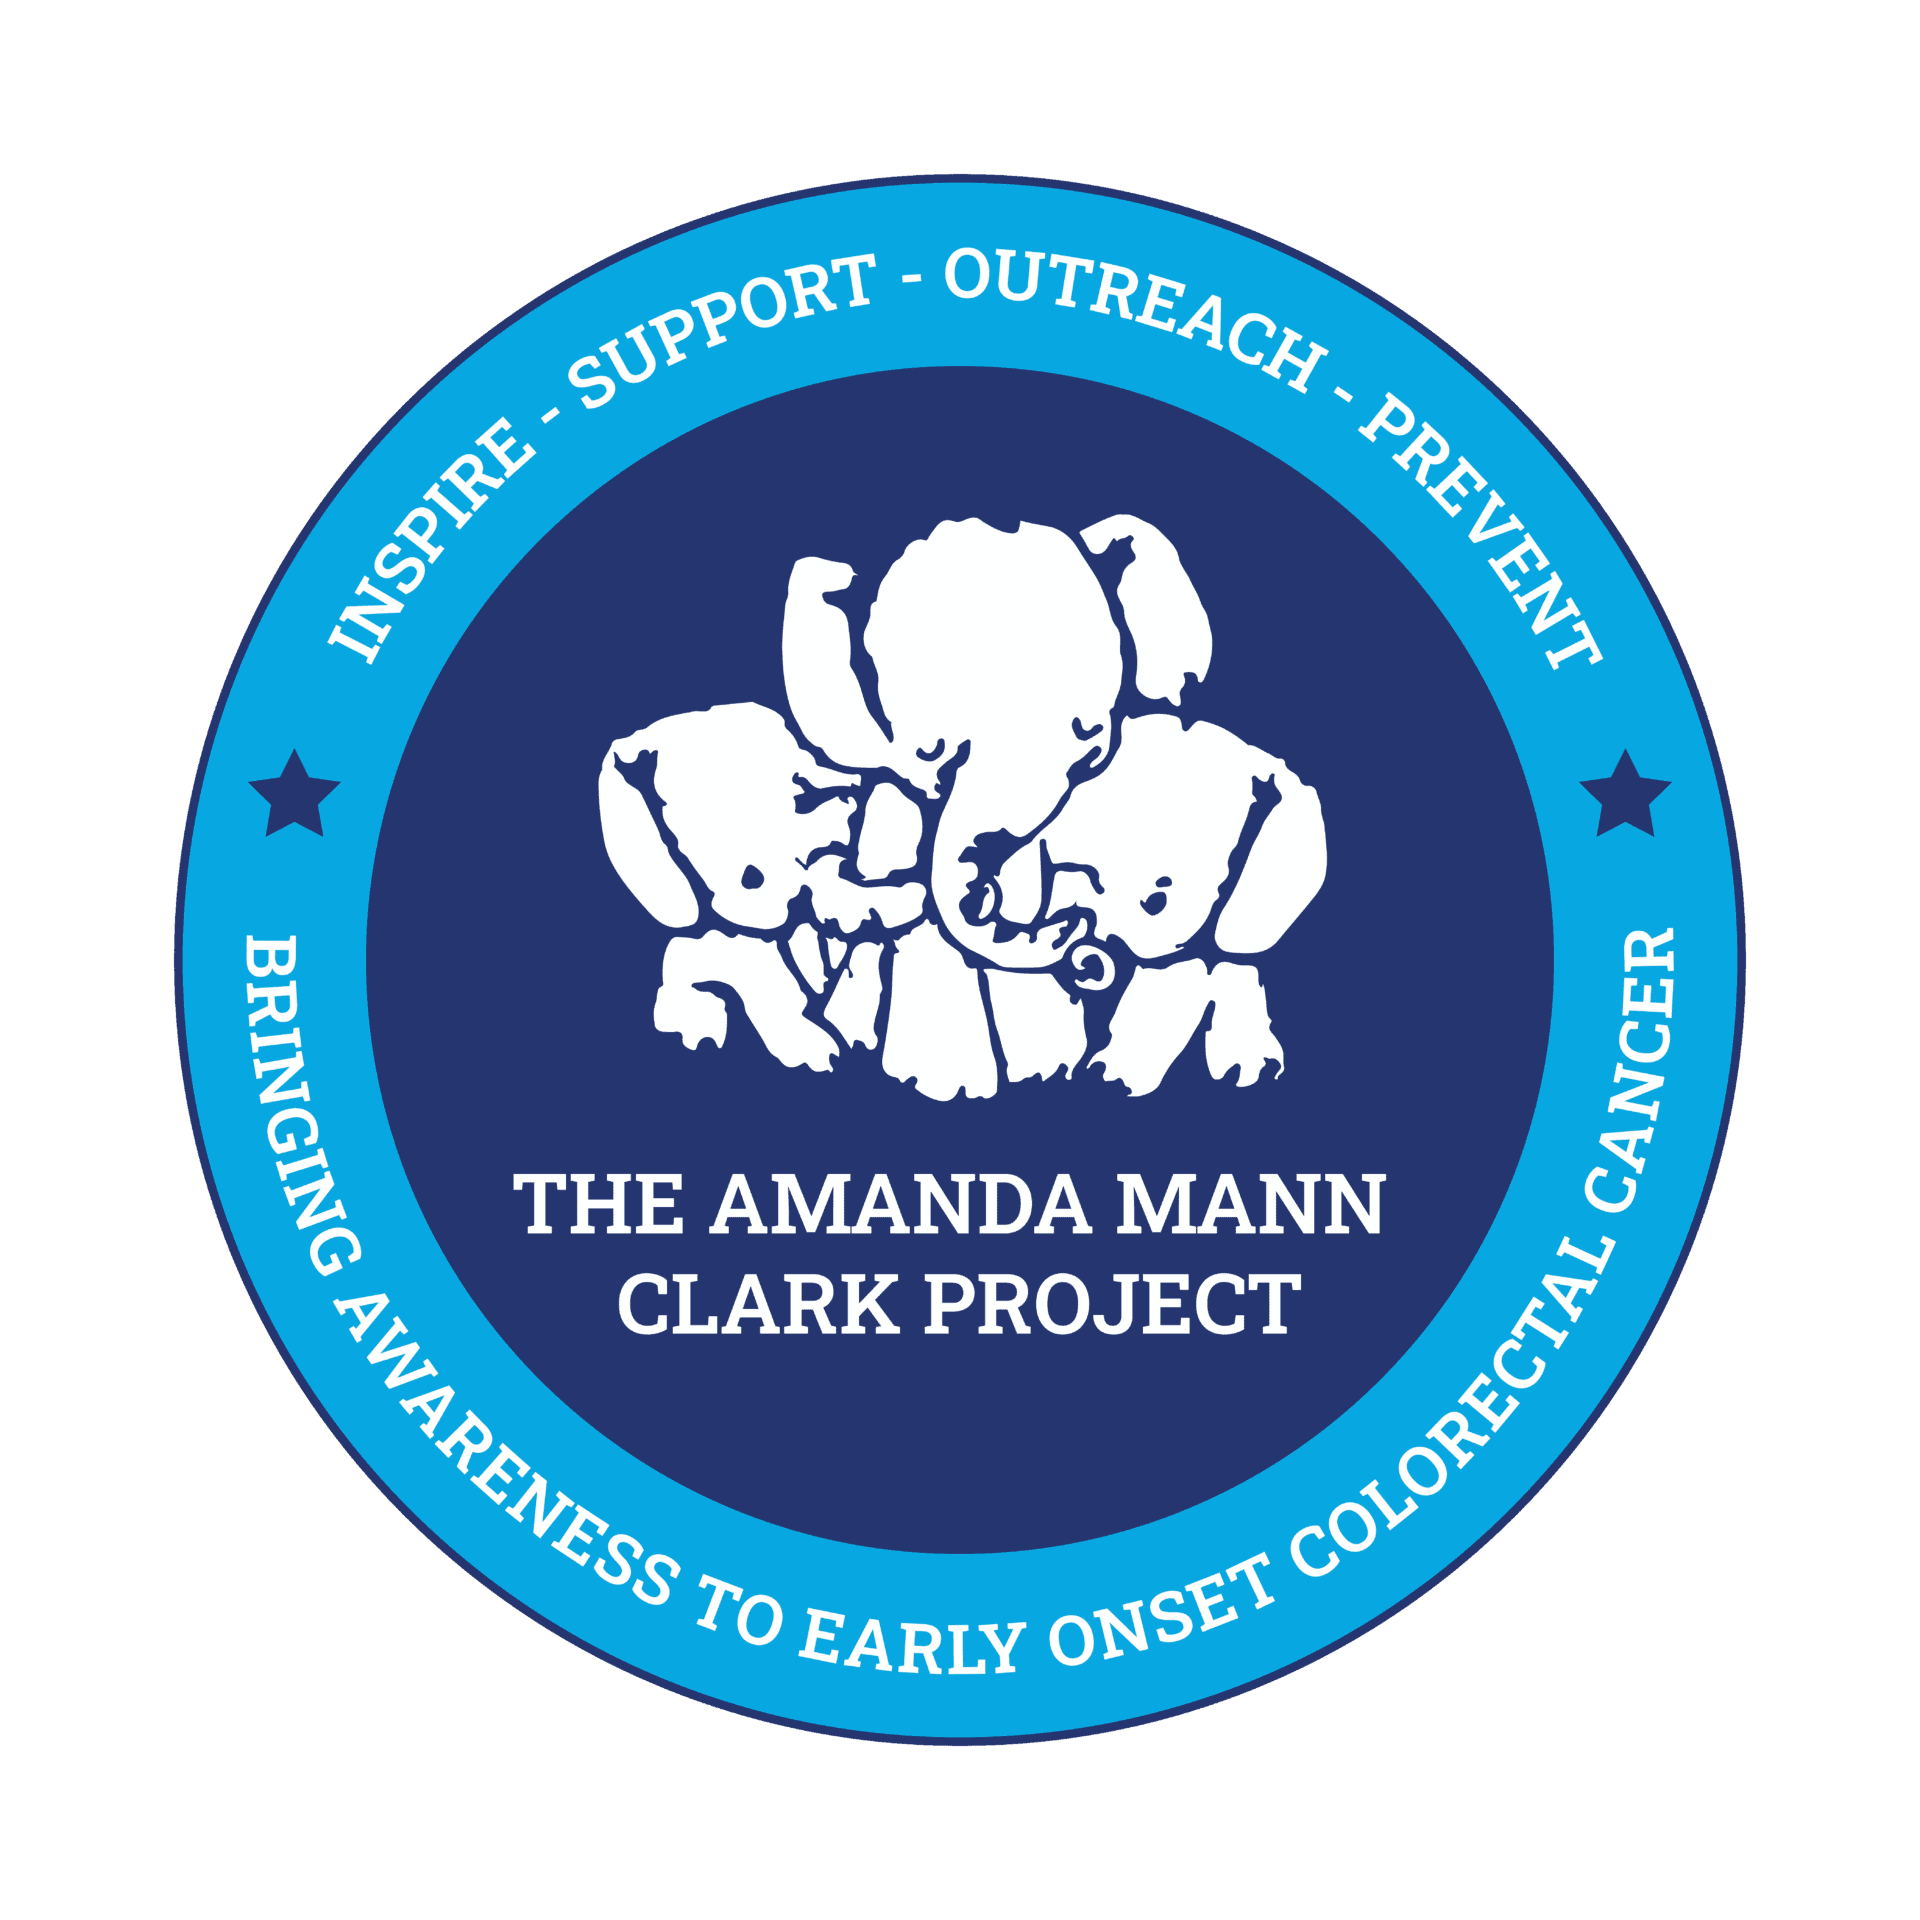 The Amanda Mann Clark Project